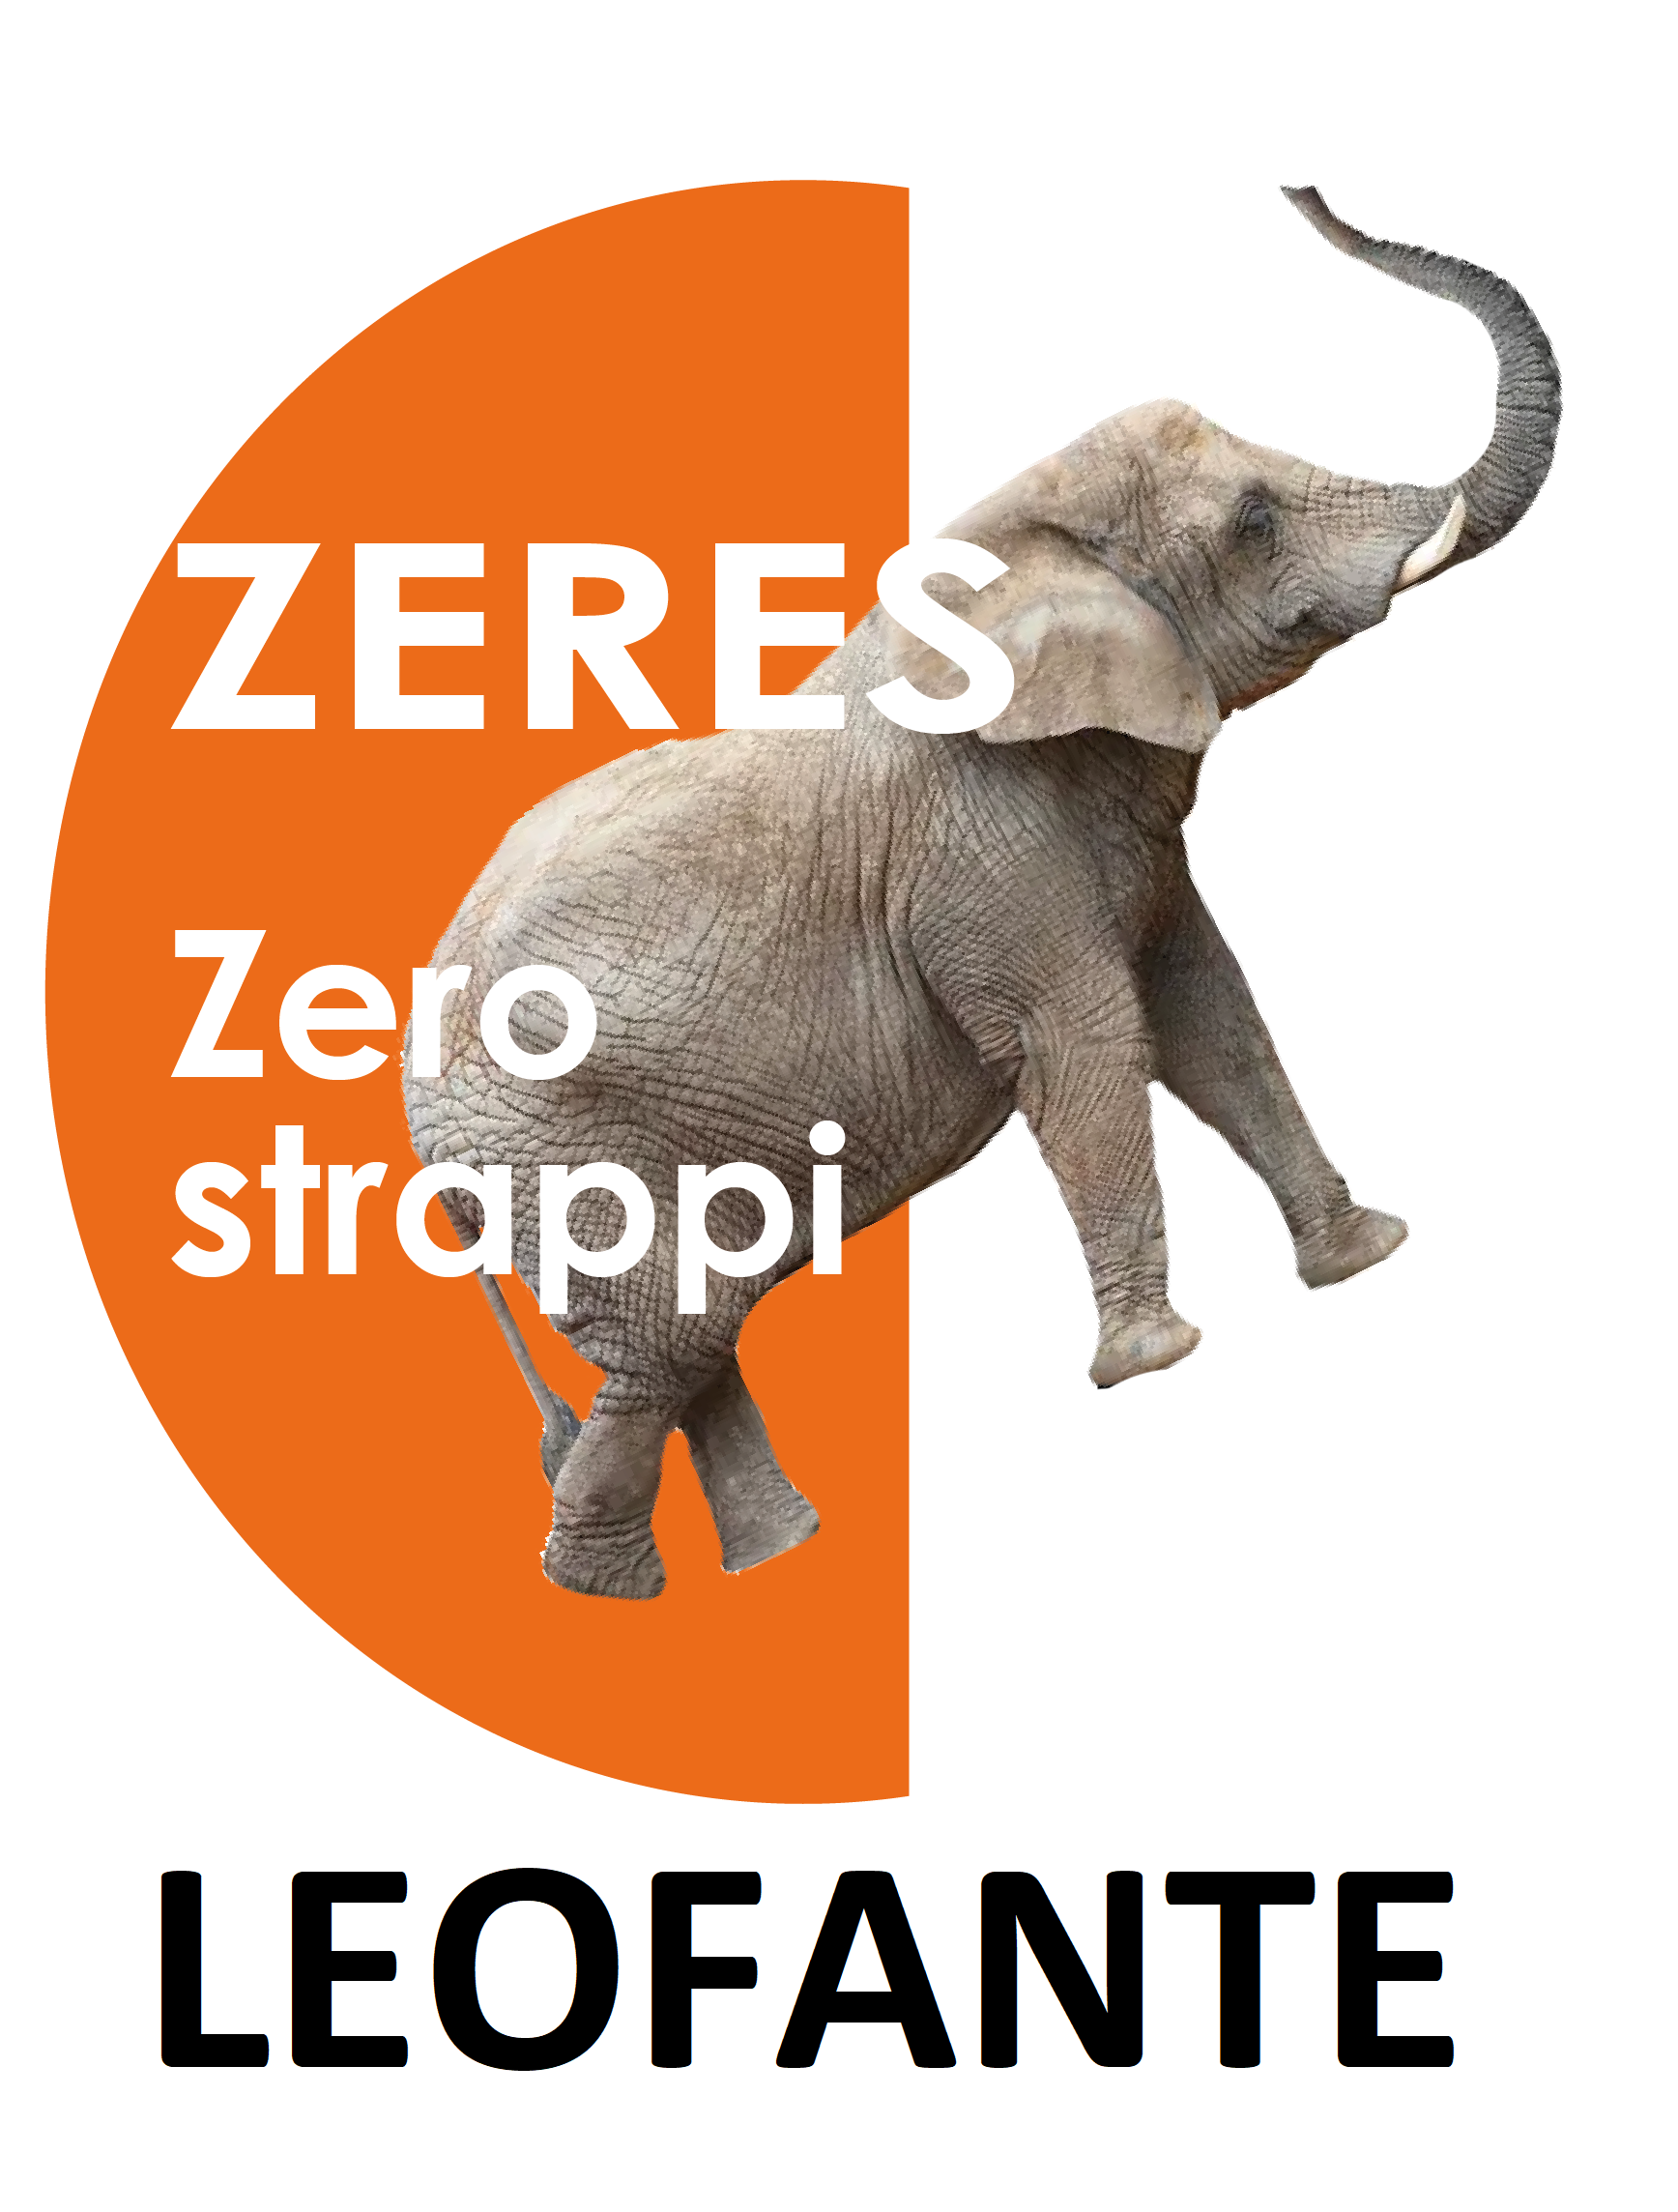 ZERES leofante